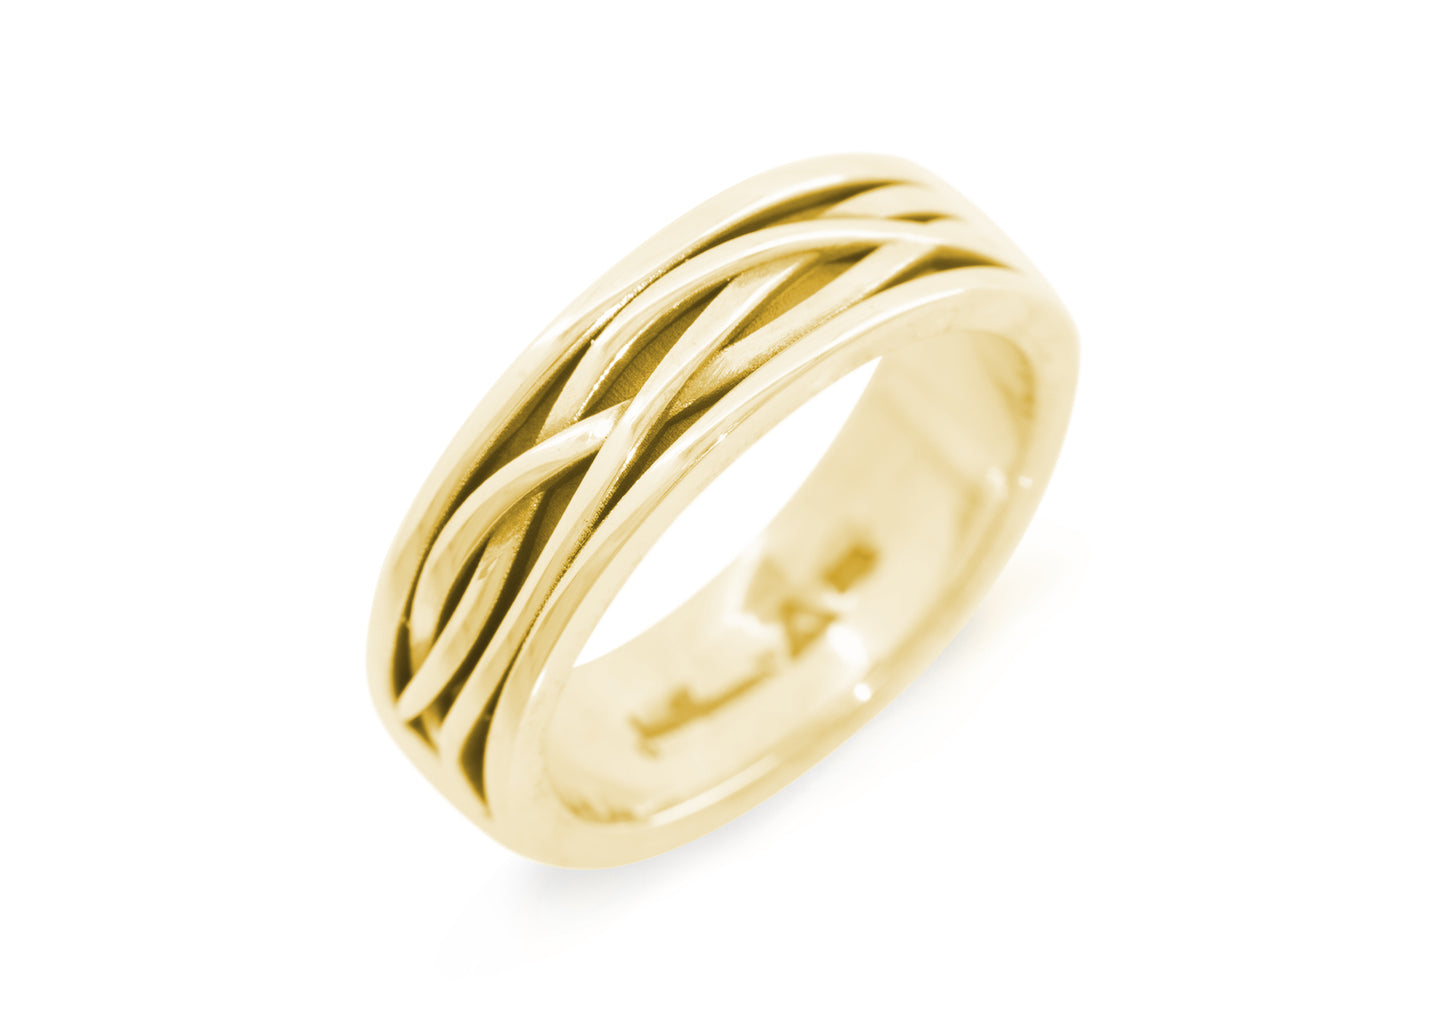 Patterned Elvish Woodland Ring, Yellow Gold